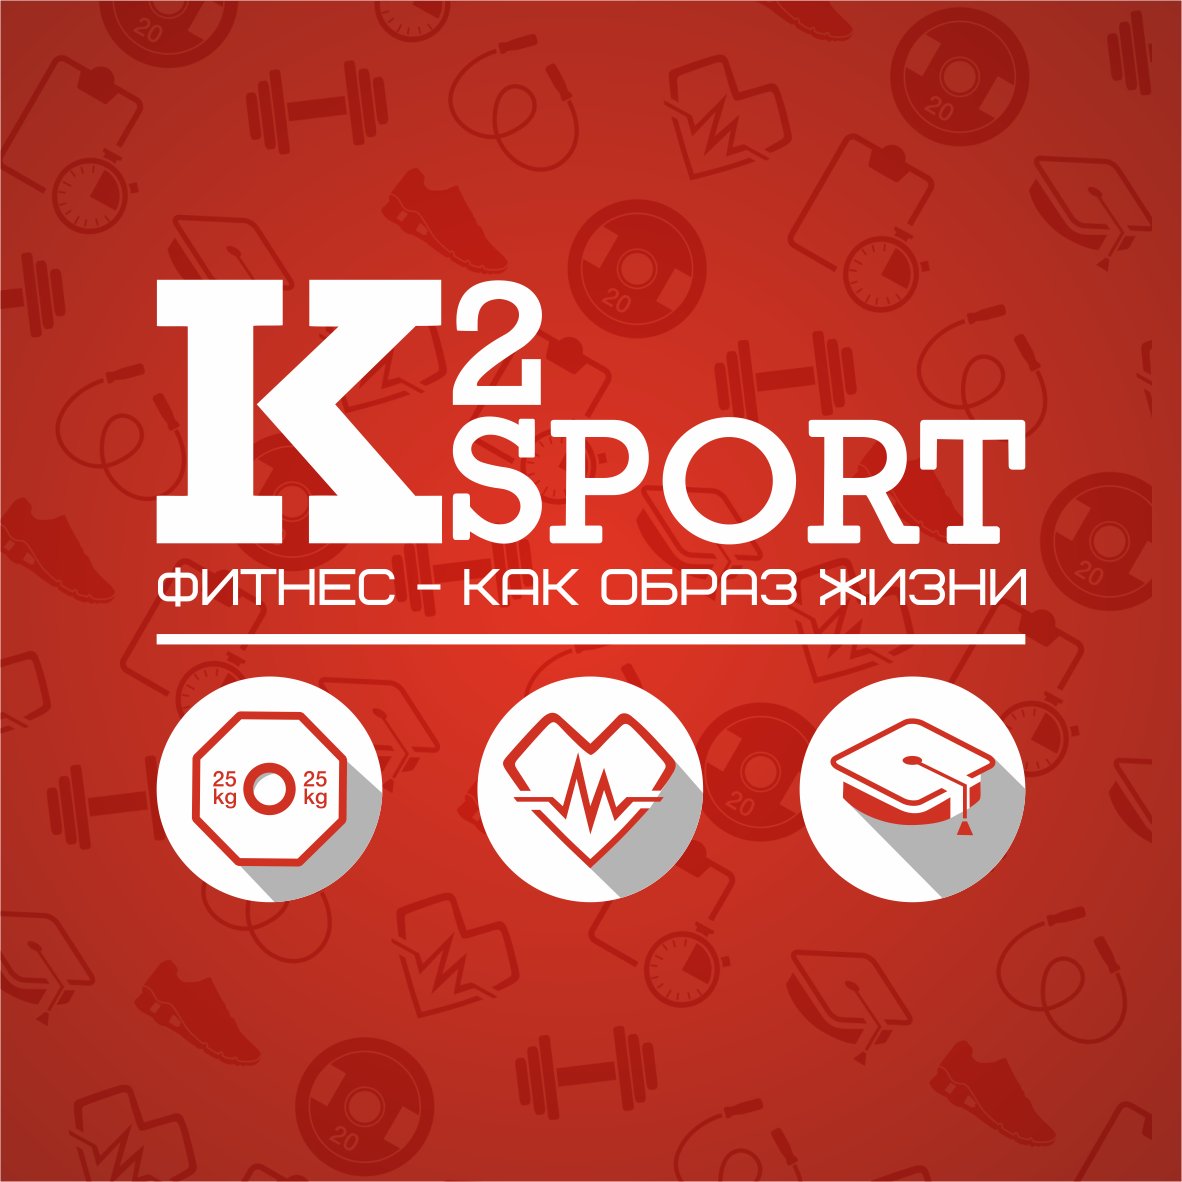 Sport 2. К2 спорт Барнаул. Барнаул 2. К2 мплрт.